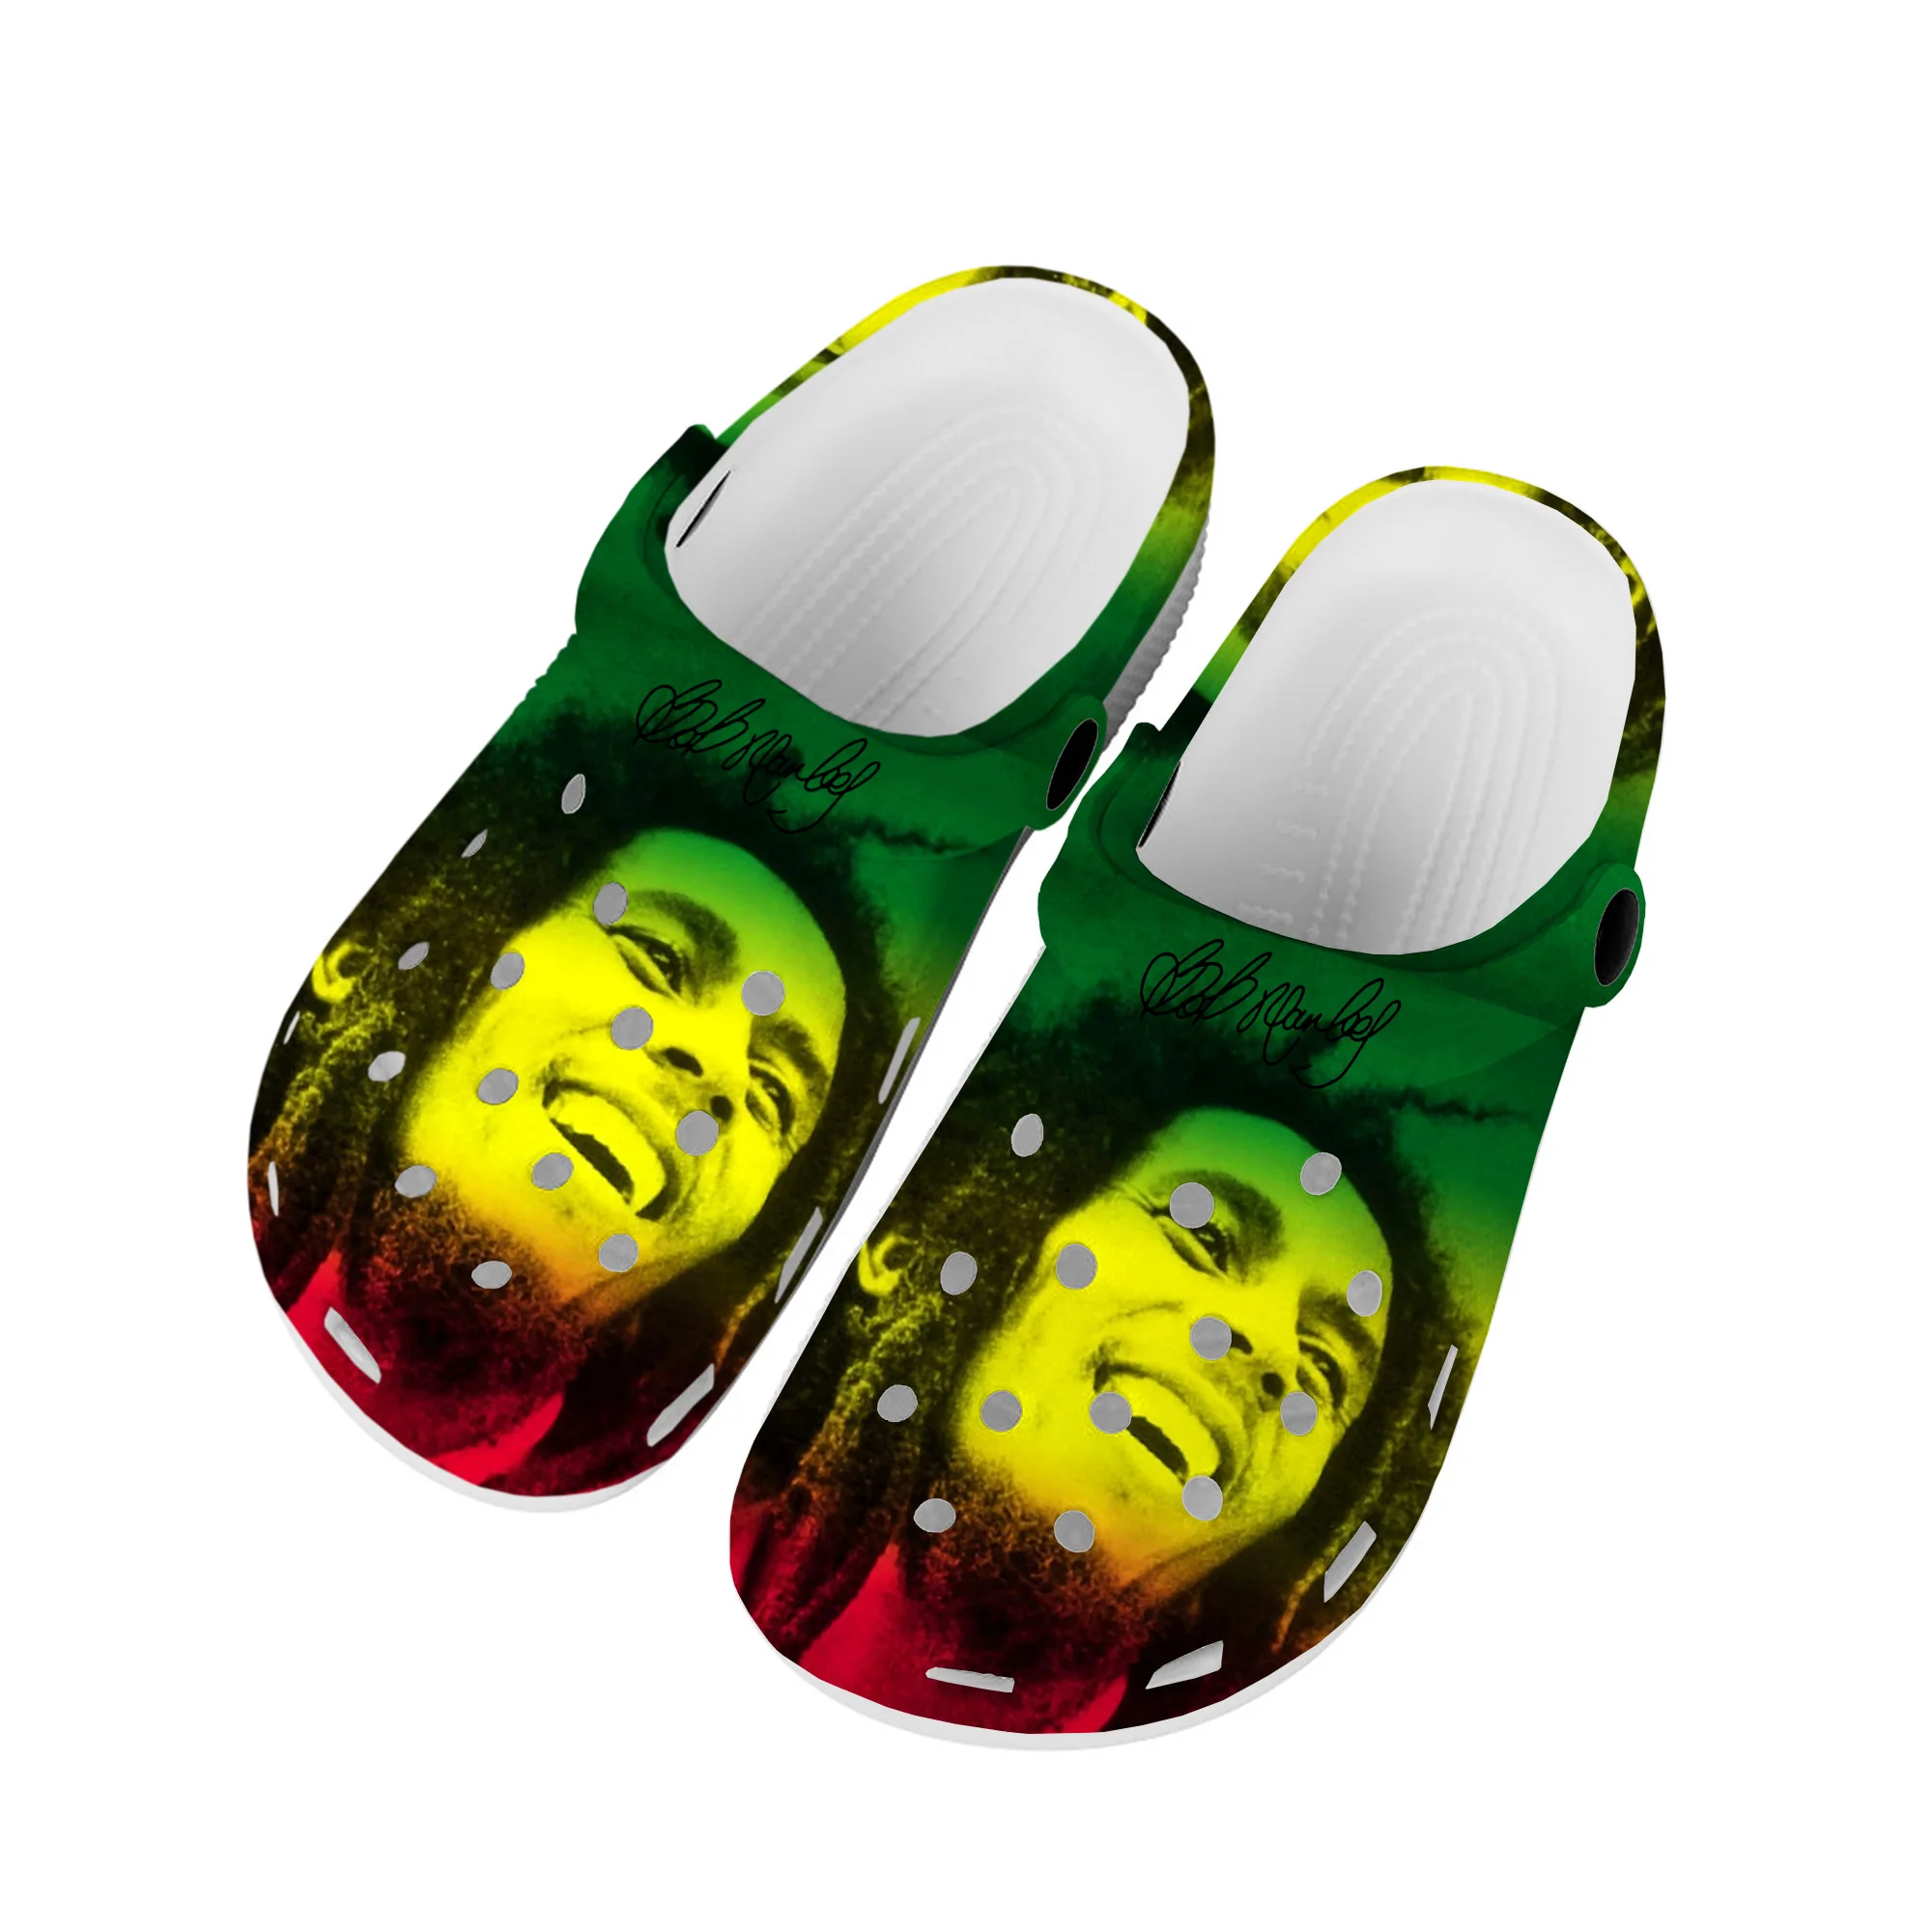 

Боб Марли Регги Раста музыкальный певец домашние Сабо пользовательская обувь для воды Мужская Женская подростковая обувь садовые Туфли-сабо пляжные тапочки с дырками